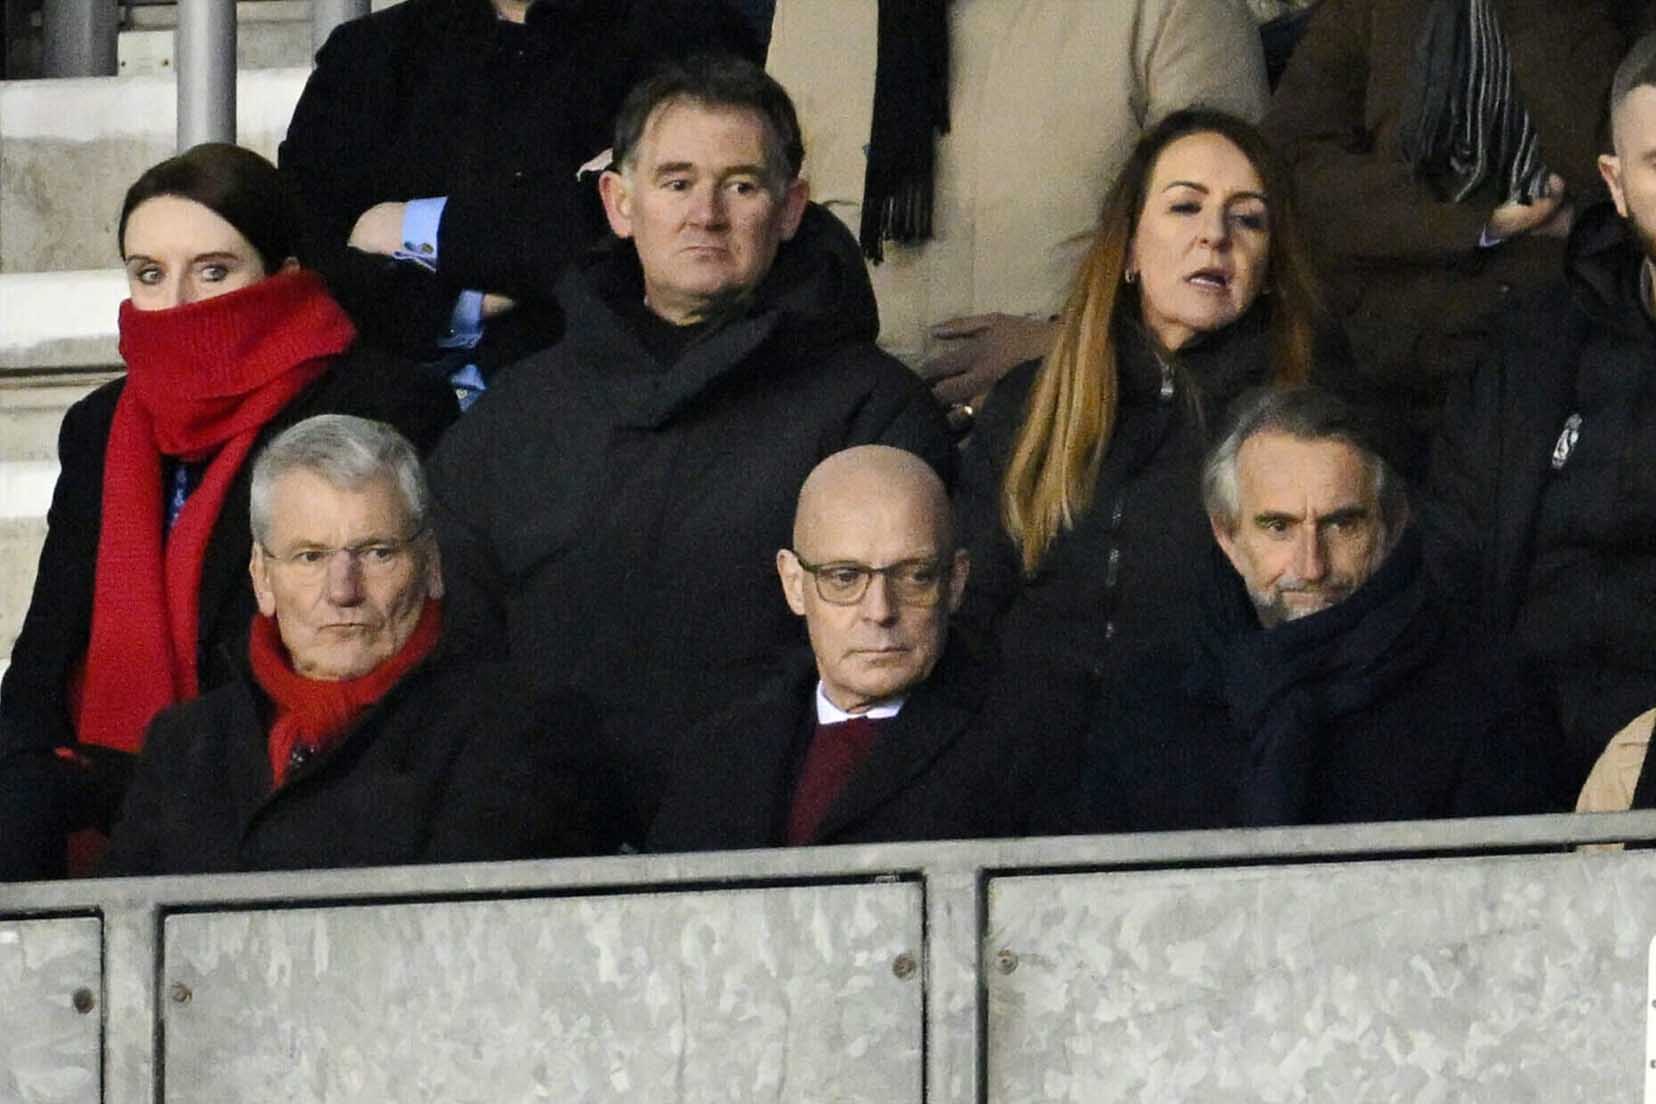 Sir Dave Brailsford (ngồi giữa hàng dưới) cùng David Gill (trái) và Jean-Claude Blanc (phải). Phía trên là Giám đốc thể thao John Murtough. Ảnh: The Athletic